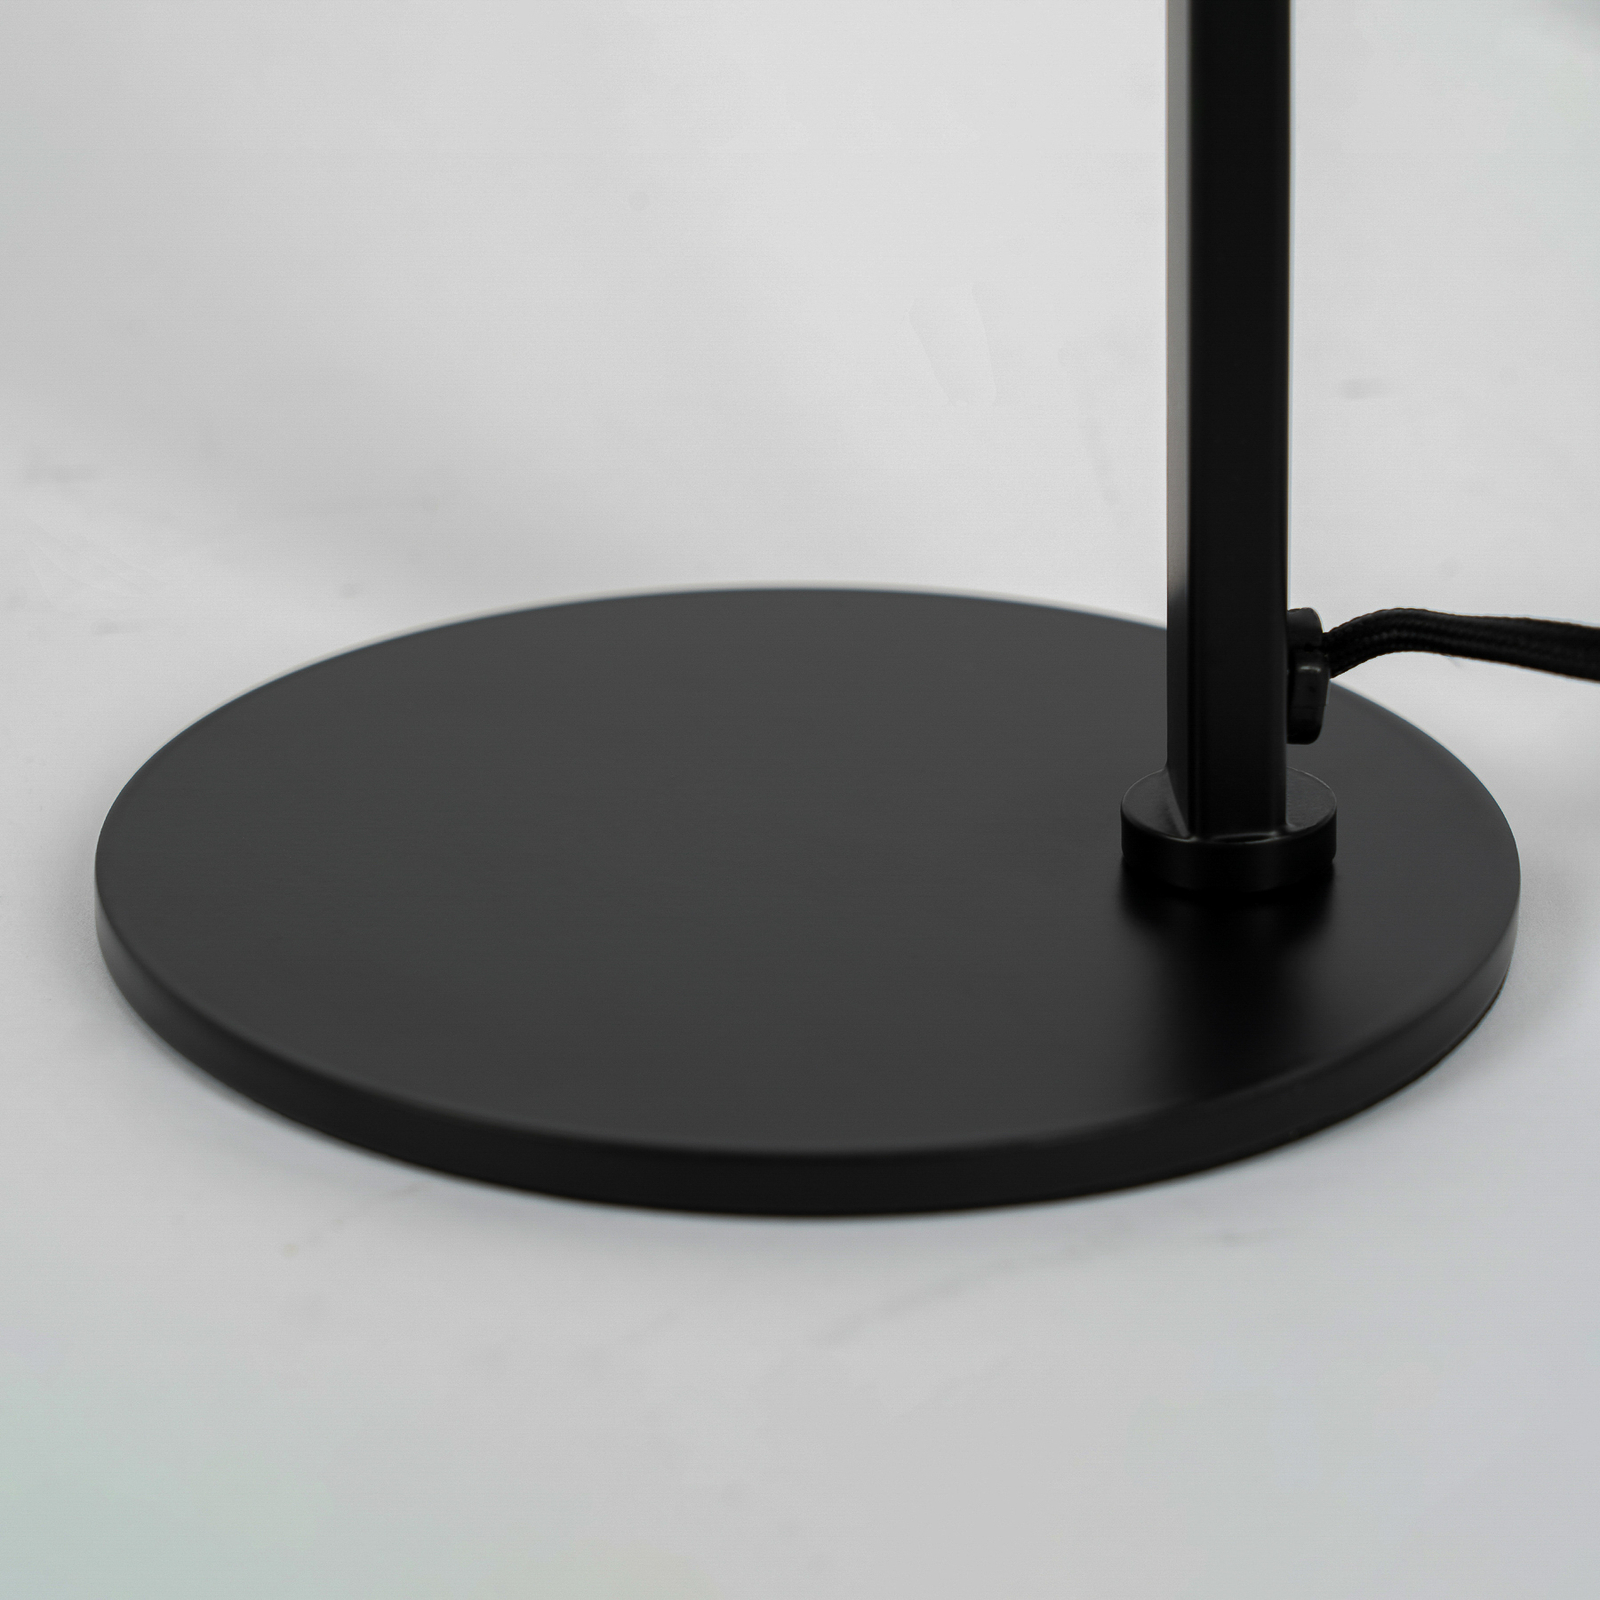 Lucande Servan lámpara de mesa de hierro negro